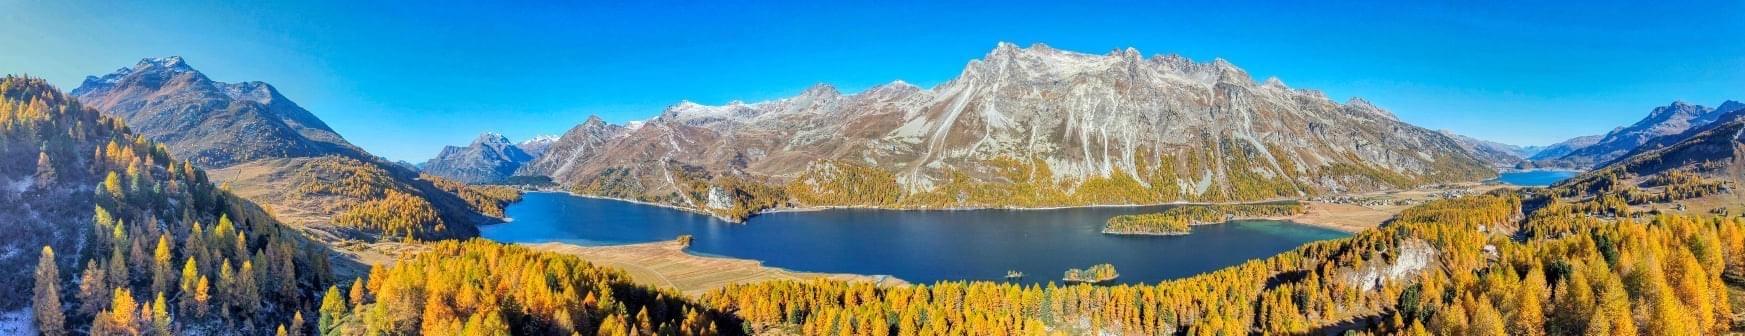 Bergpanorama im goldenen Herbst bei Sonnenschein und blauen Himmel. Im Vordergrund einige Bäume, ein See und im Hintergrund eine Bergkette.